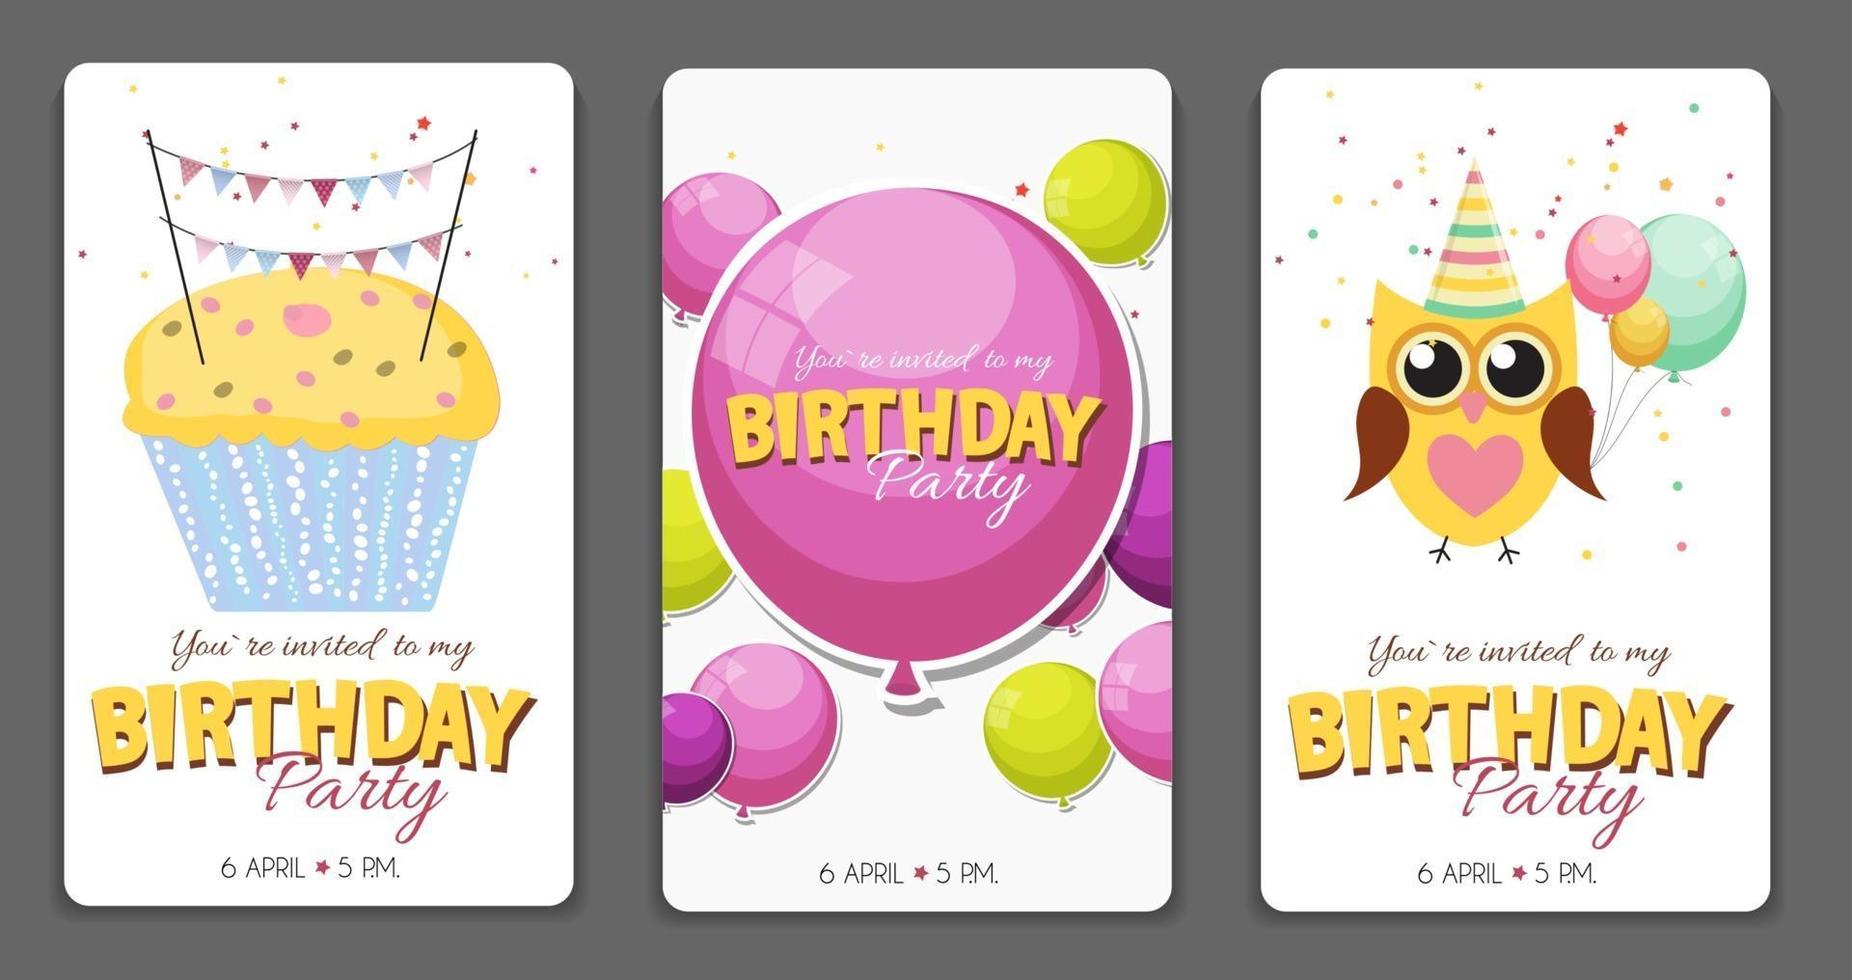 verjaardagsfeestje uitnodigingskaart sjabloon vectorillustratie vector